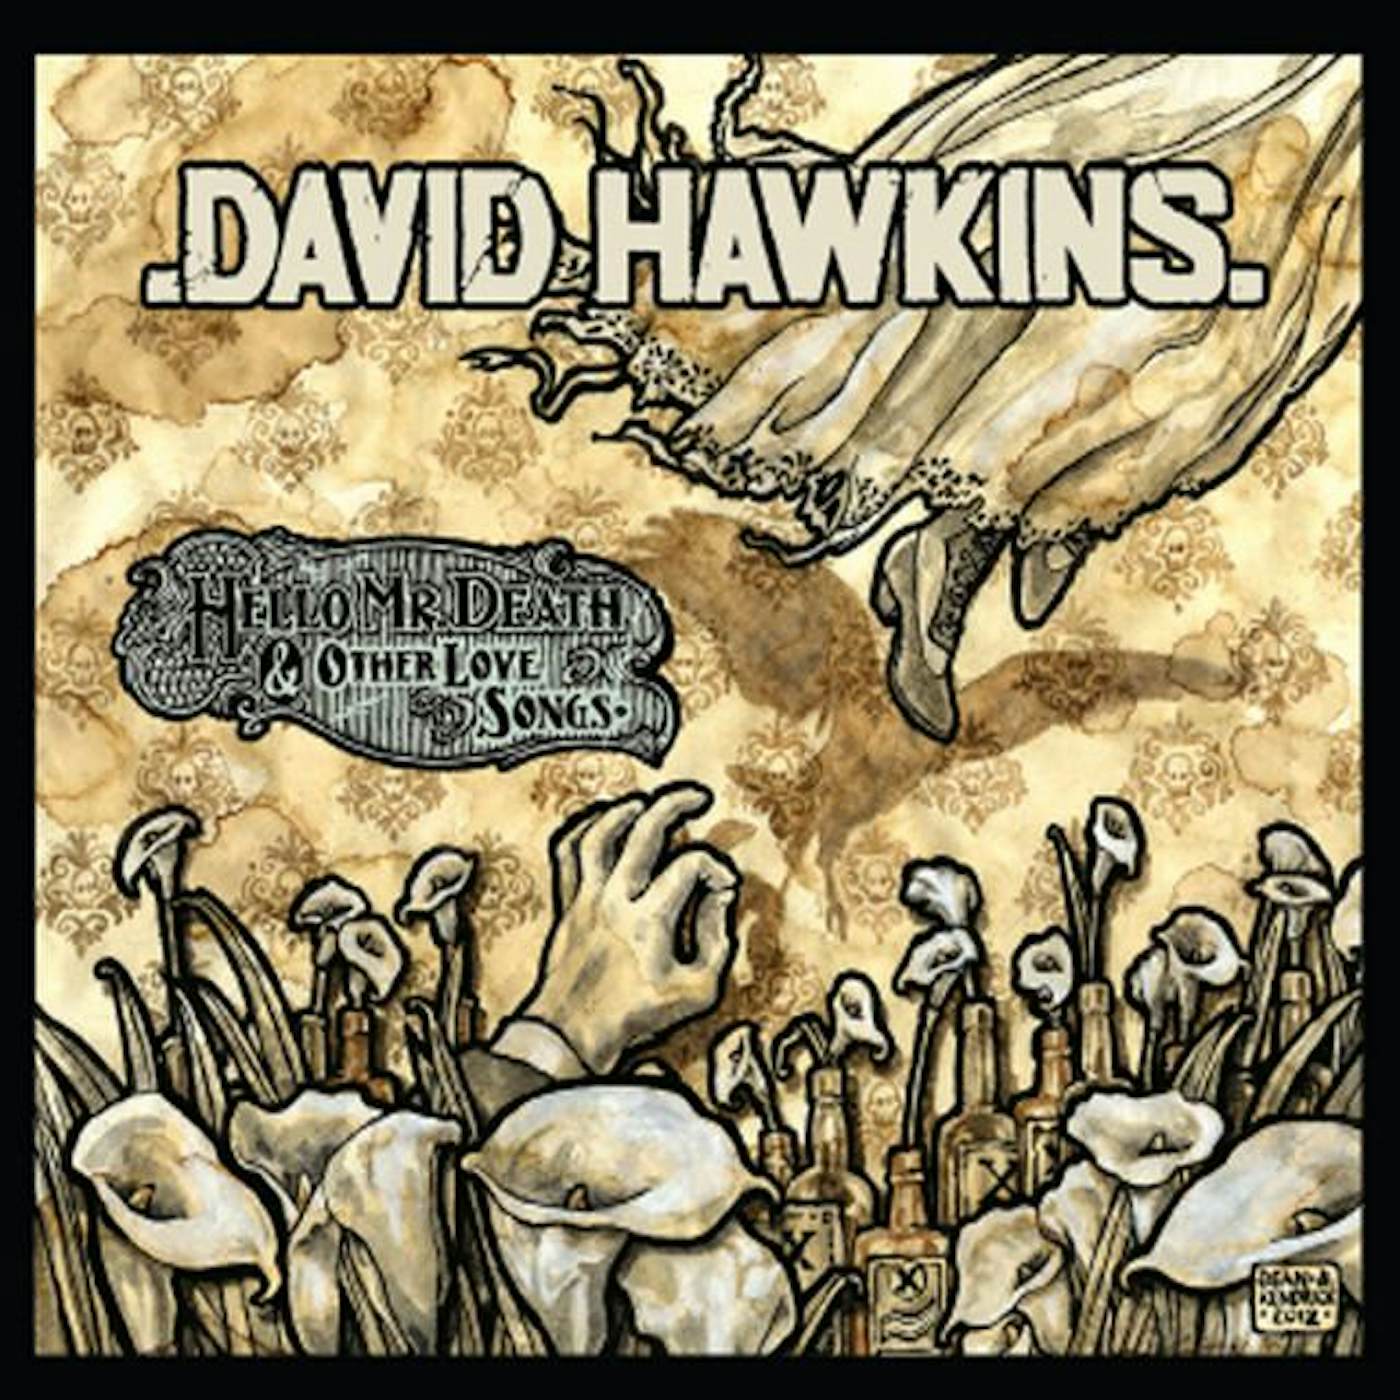 David Hawkins